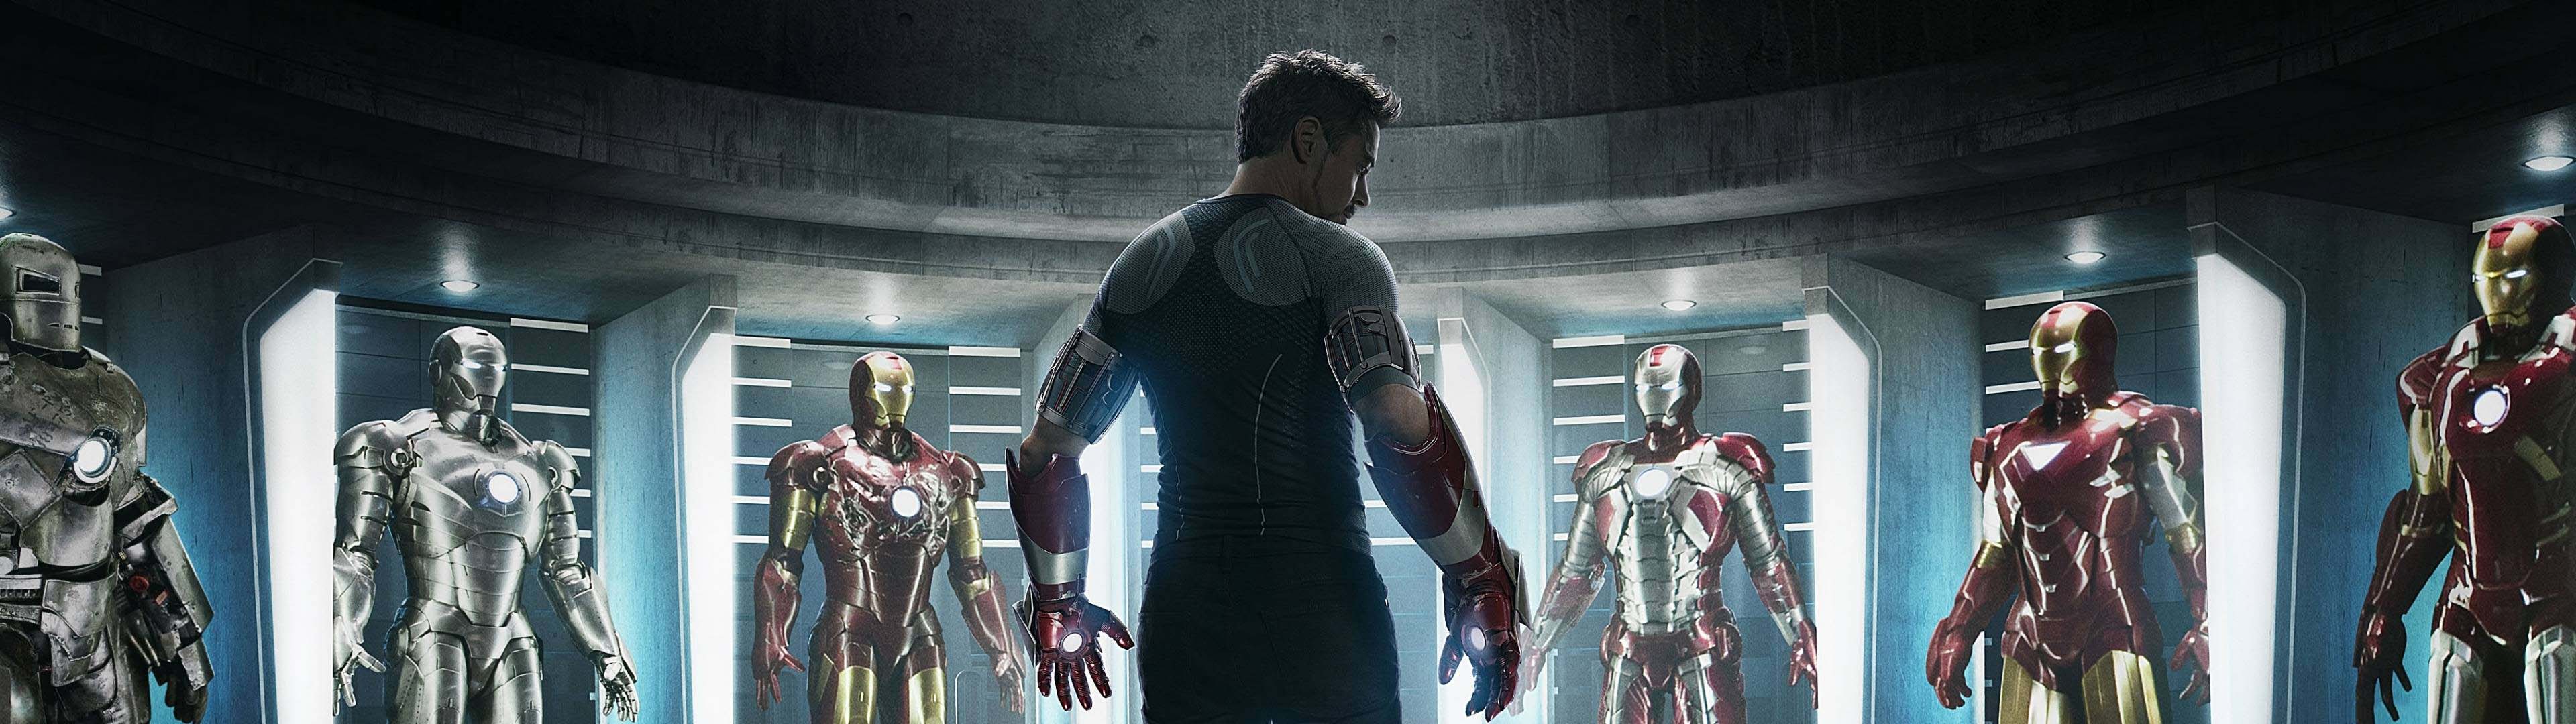 Hình nền màn hình kép Iron man